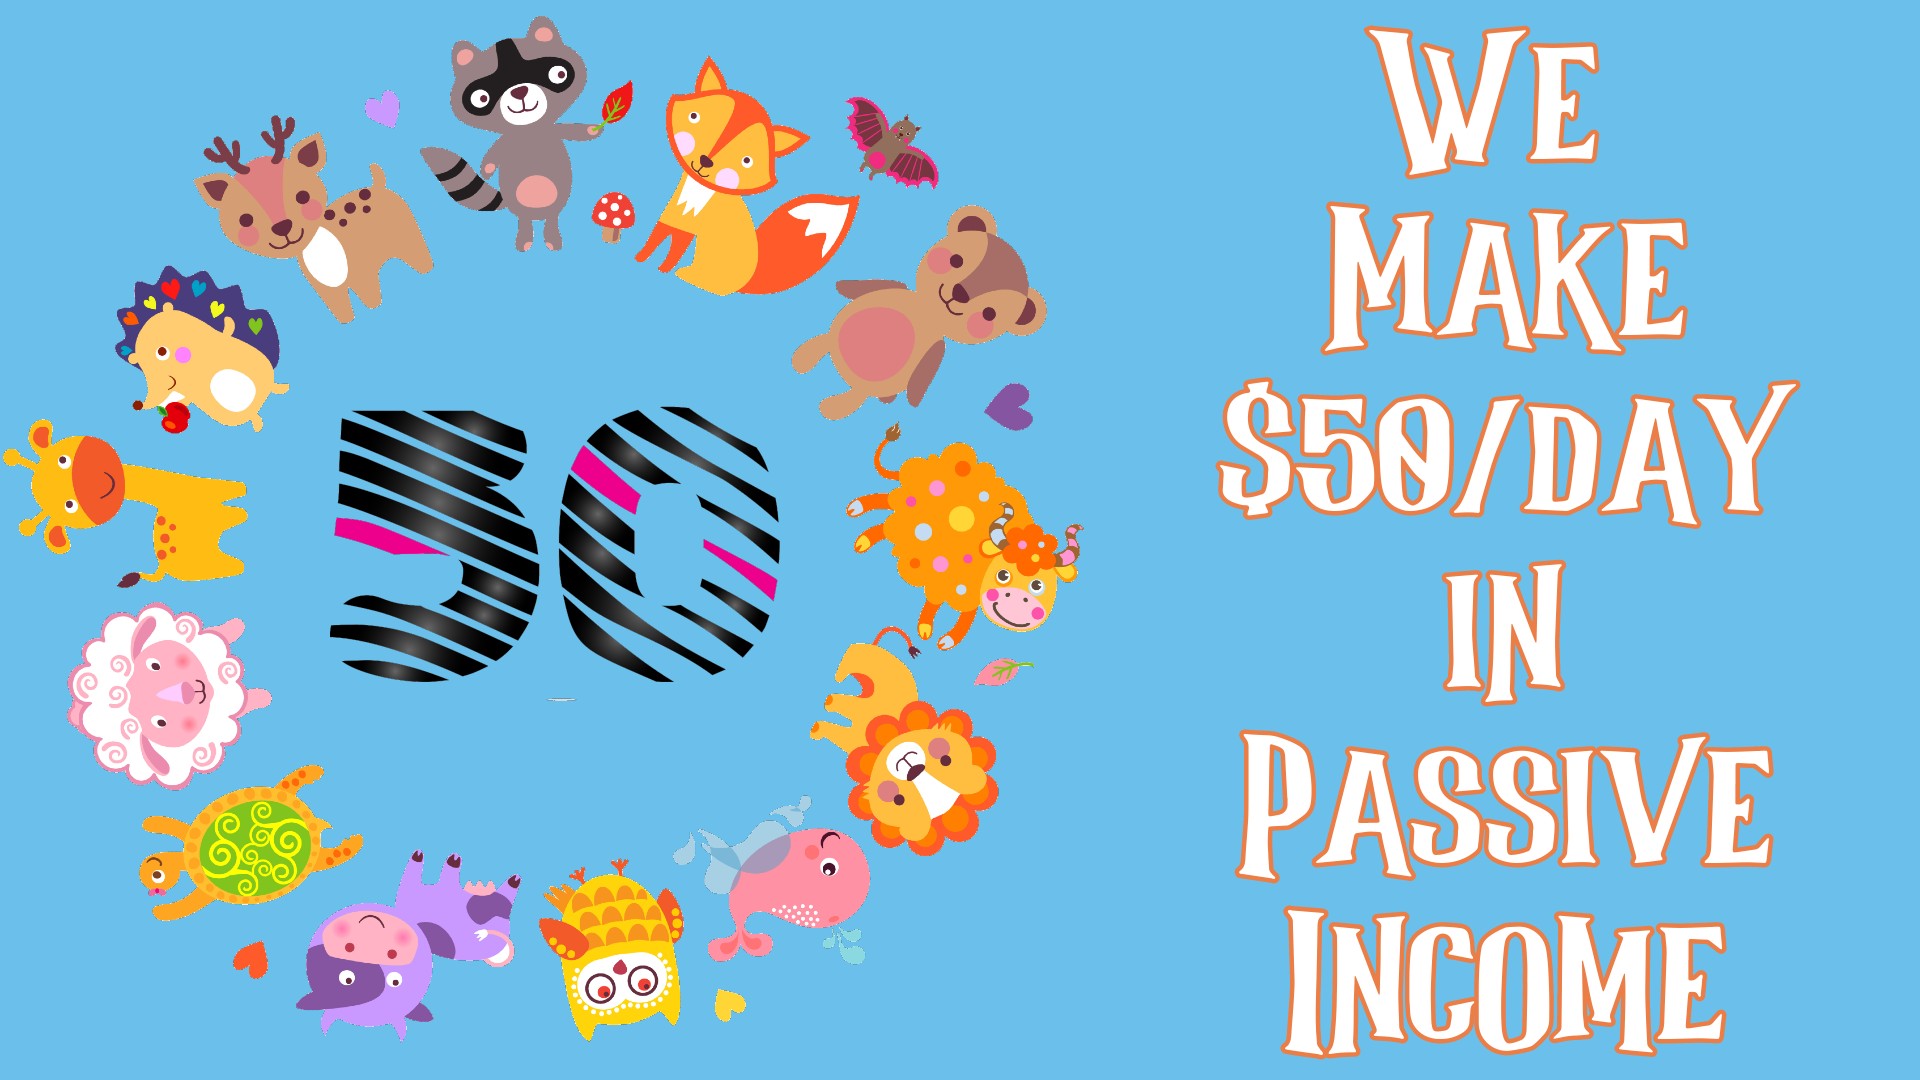 We Make $50/day in Passive Income